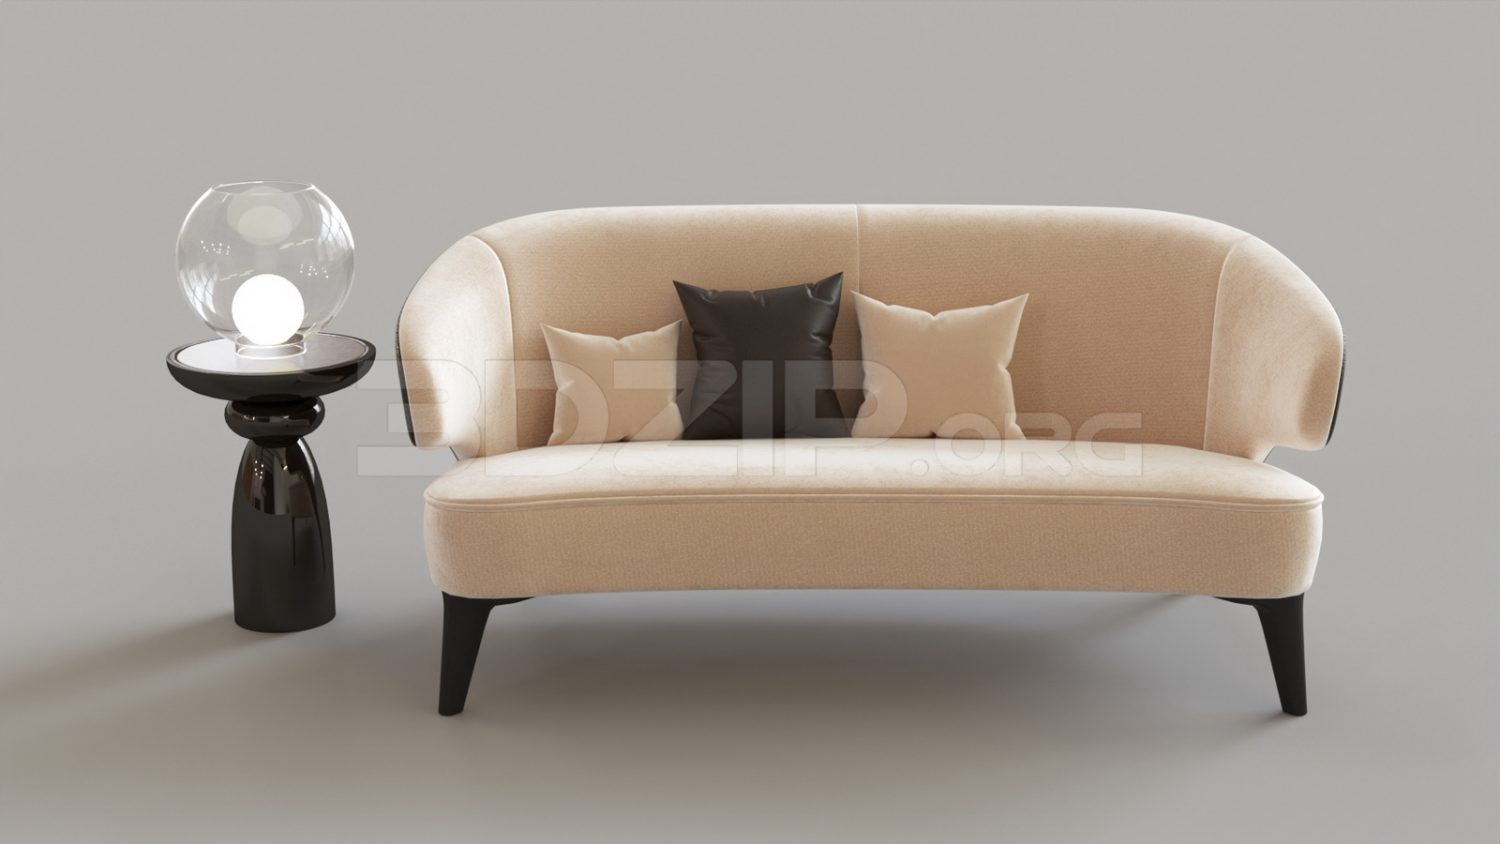 5174. Free 3D Sofa Model Download